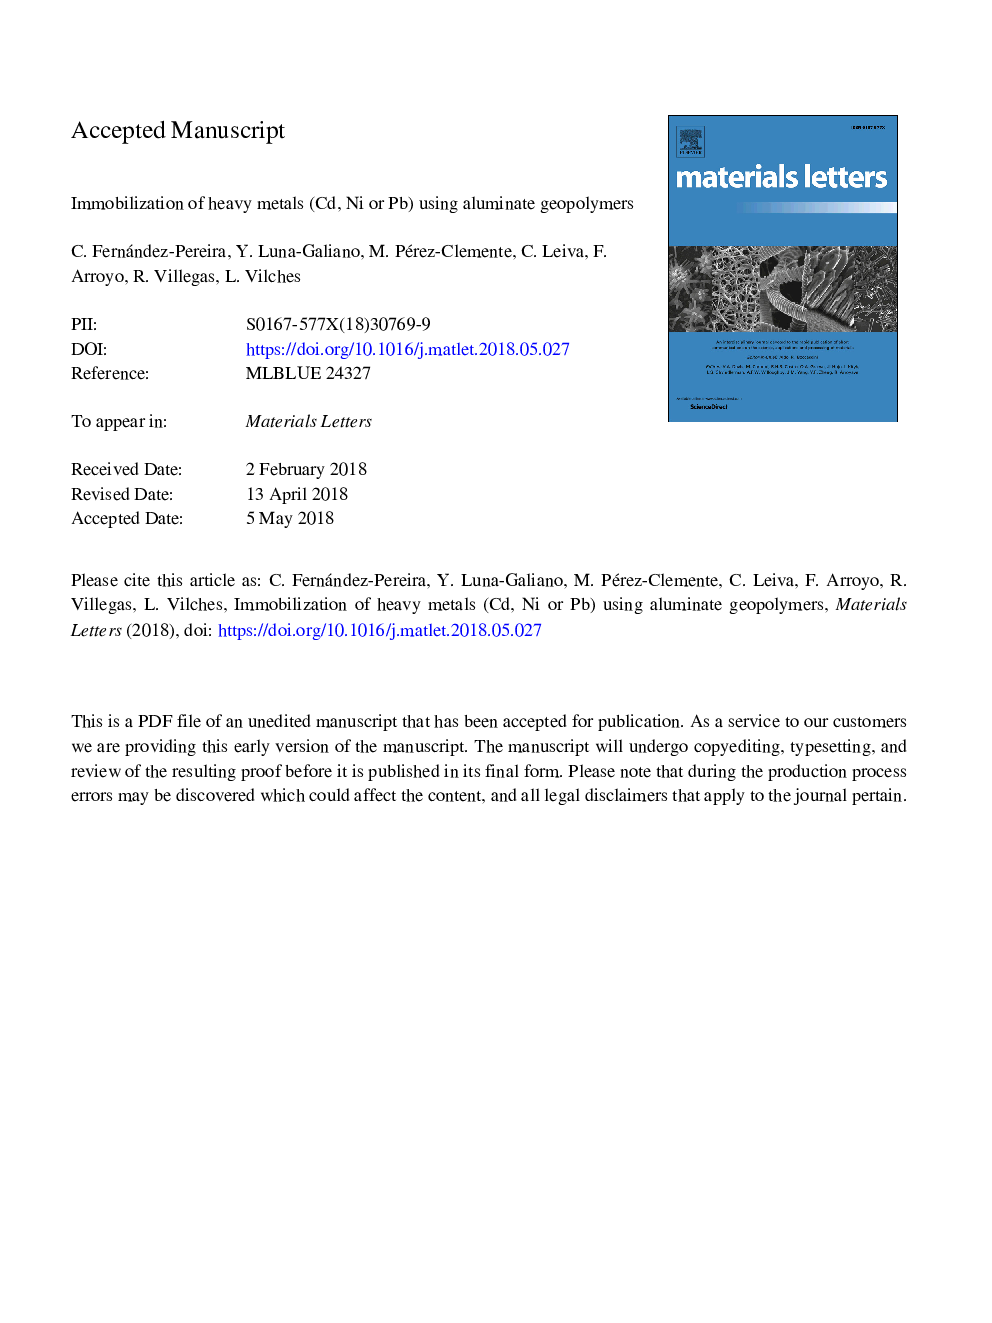 امولسیون فلزات سنگین (سی دی، نیکل یا پتاسیم) با استفاده از ژئوموپلیمرهای آلومینات 